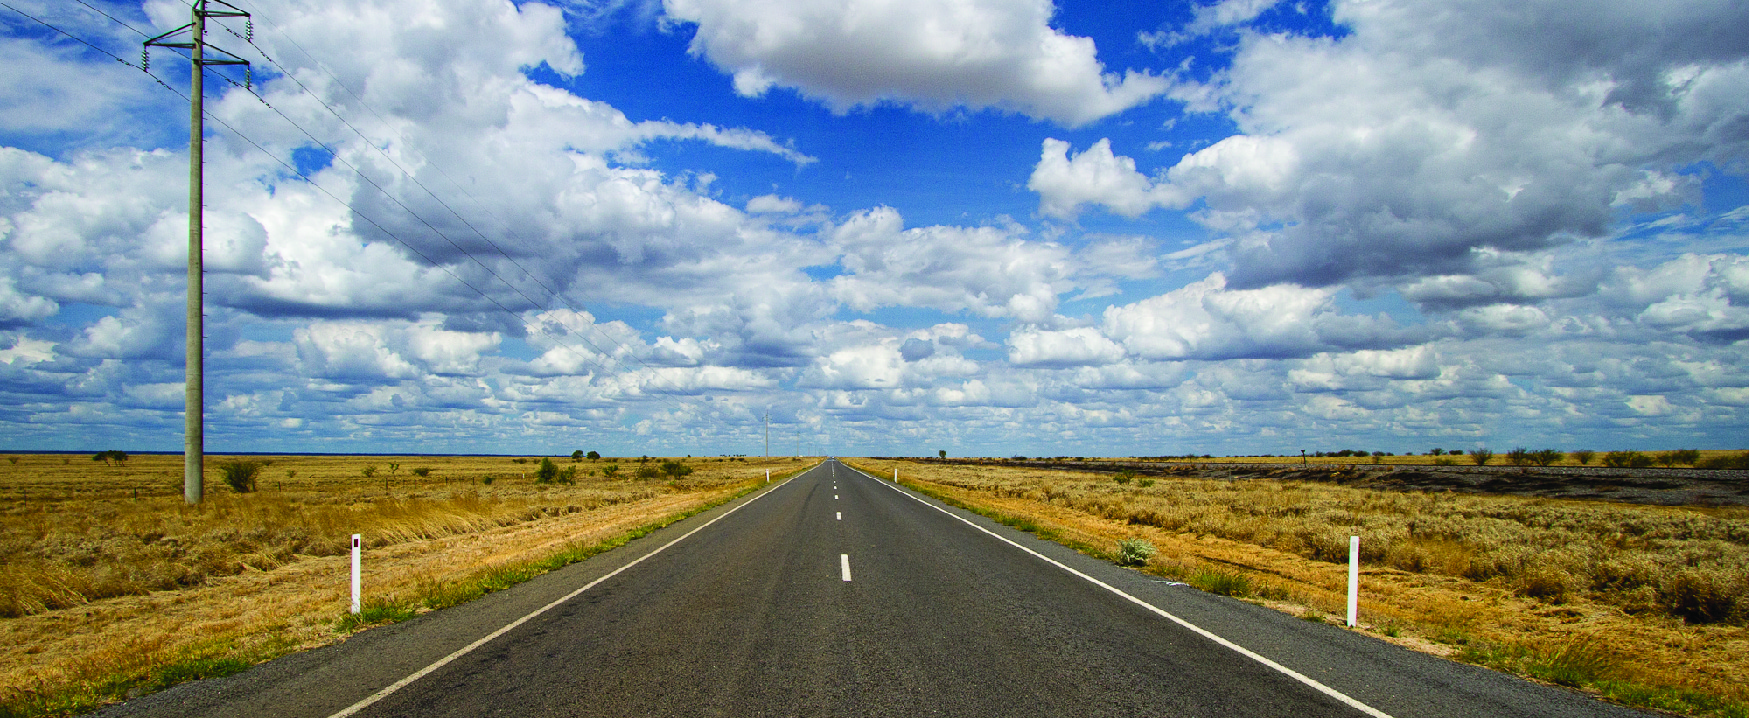 Cette image montre le milieu d'une route dégagée avec des nuages dans le ciel et un paysage dégagé de chaque côté de la route.